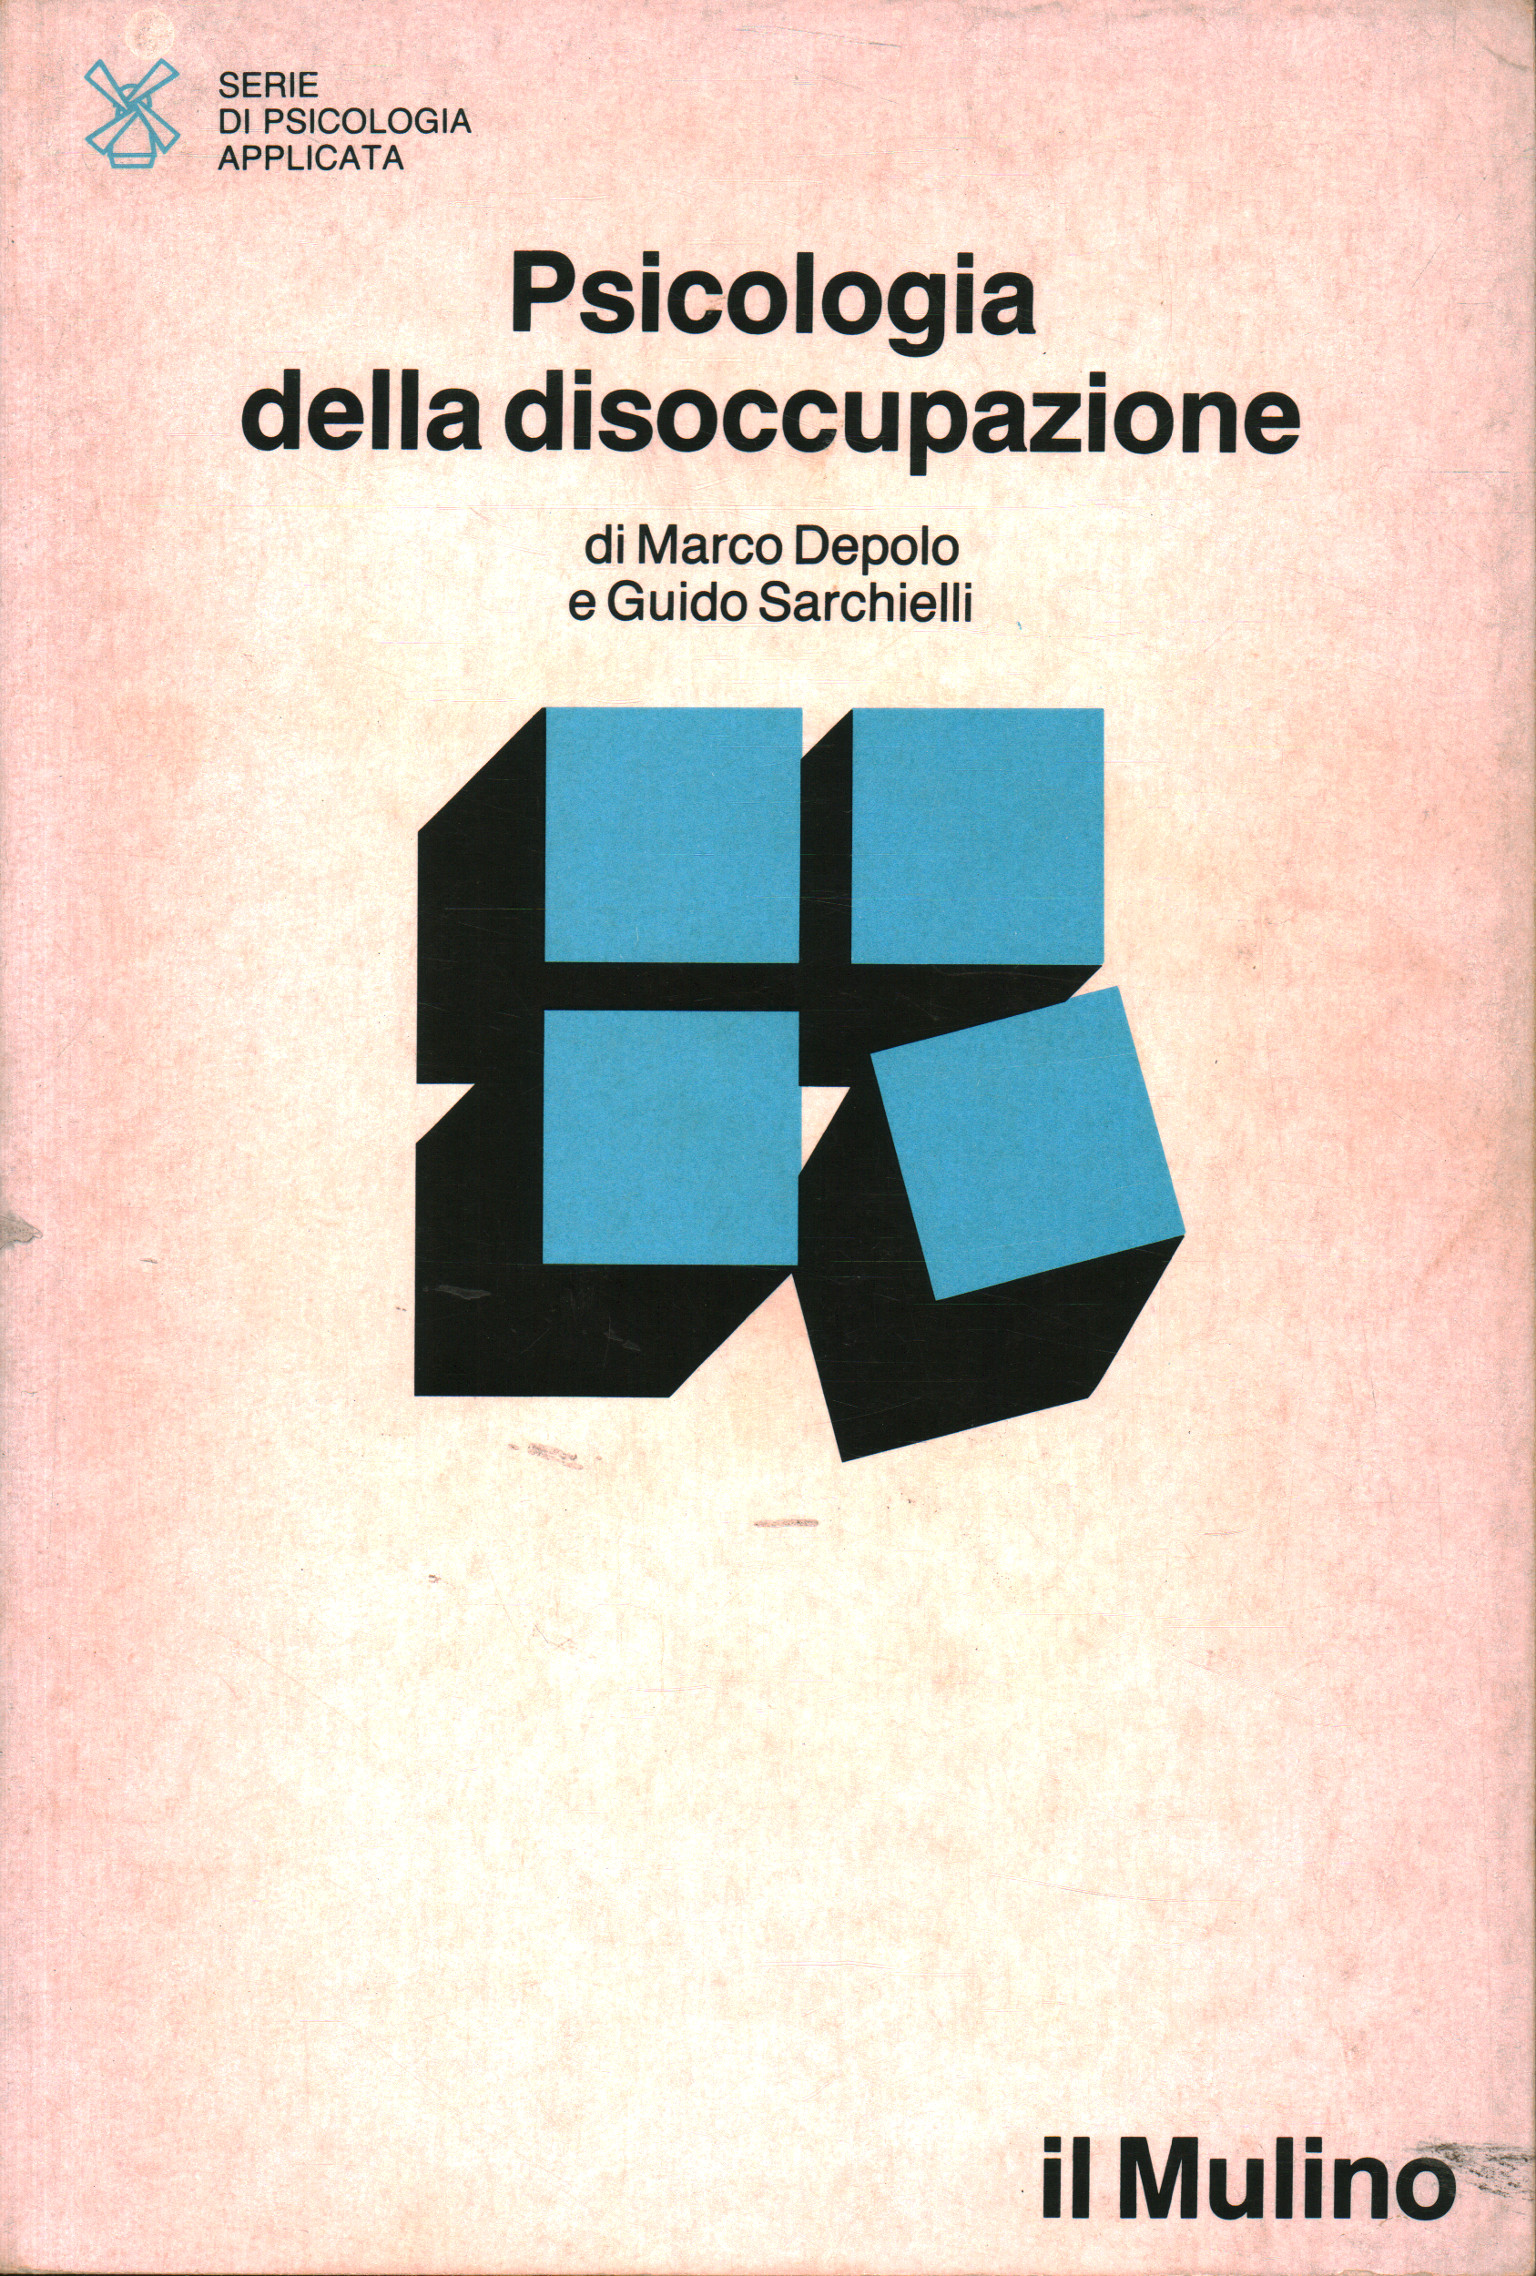 La psychologie de chômage, Marco Depolo, Guido Sarchielli